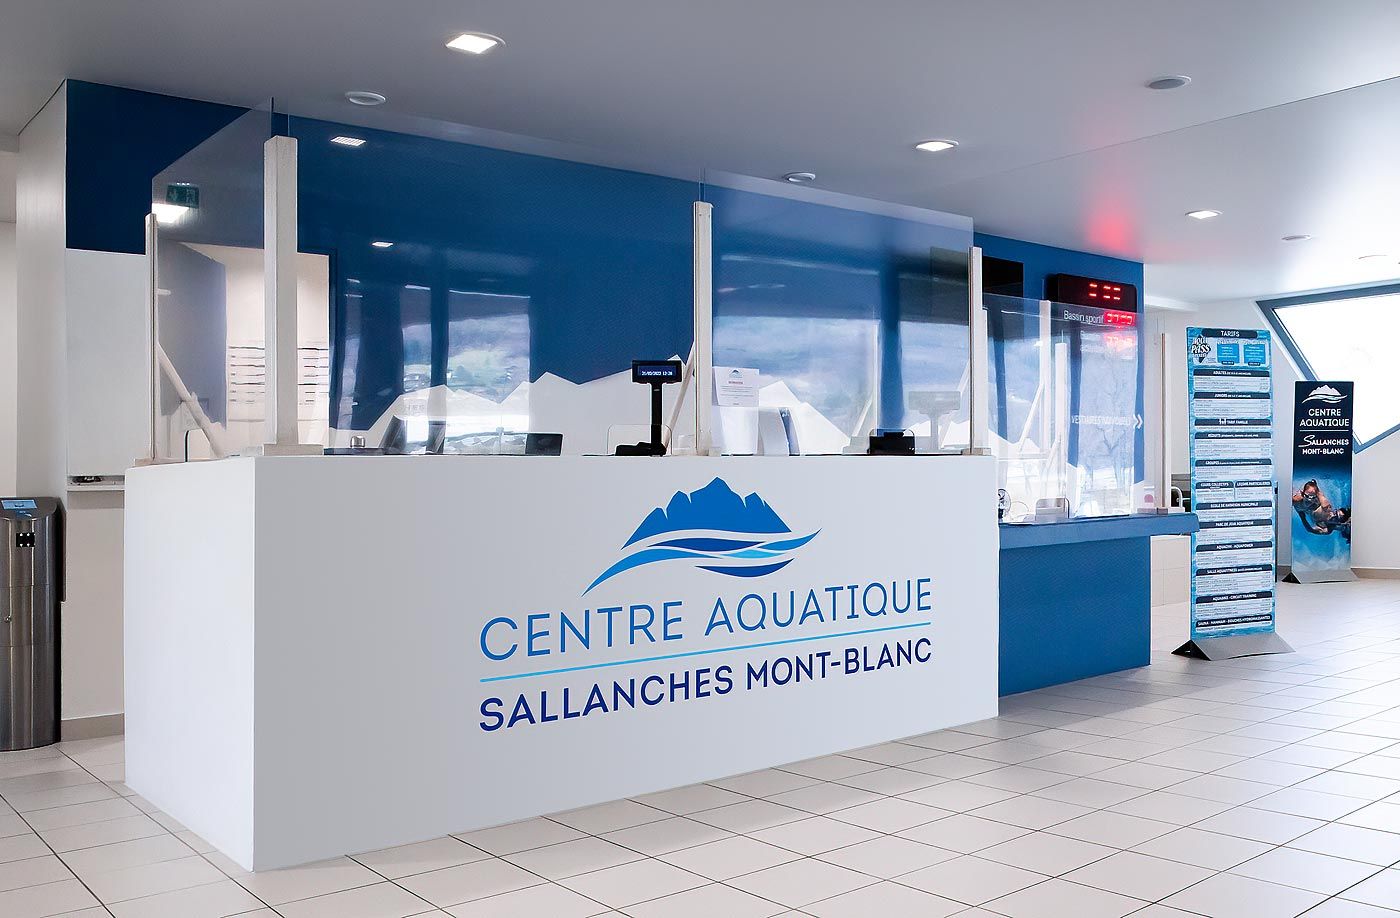 Accueil du Centre aquatique Sallanches Mont-Blanc